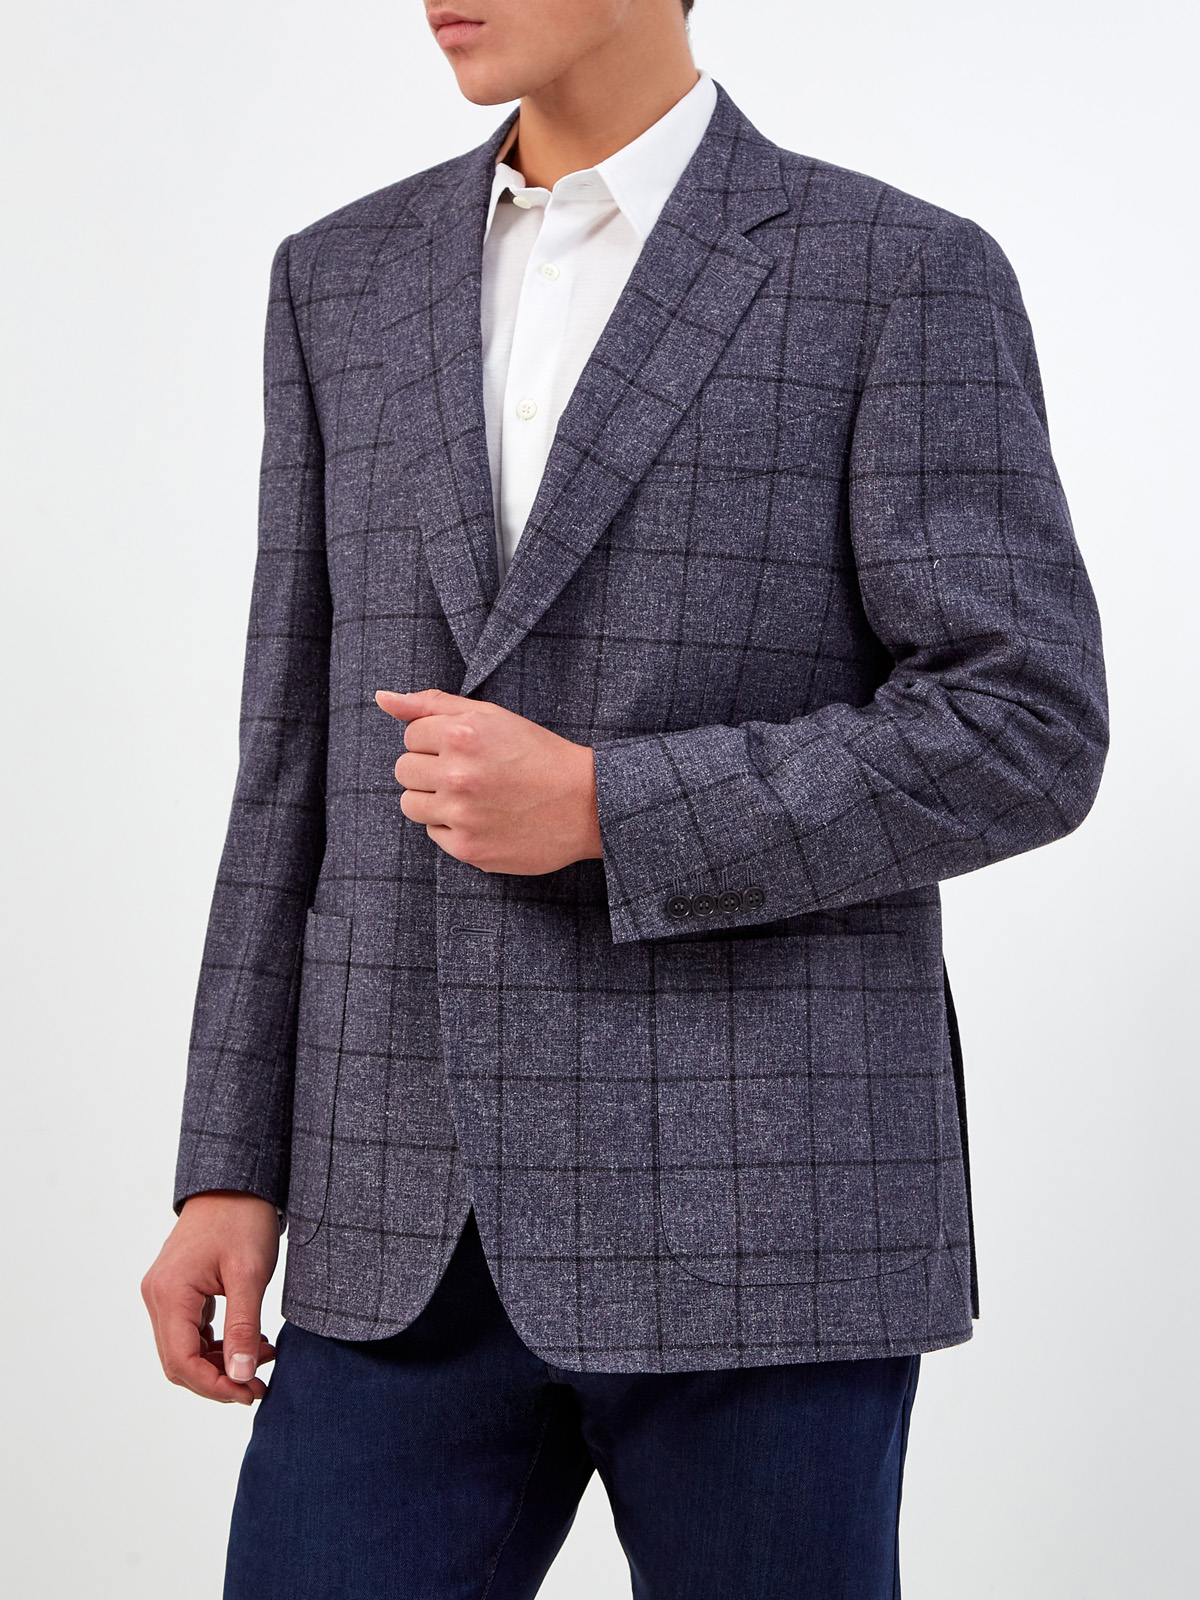 Пиджак из шерсти, шелка и кашемира с узором в клетку CANALI, цвет серый, размер 52;54;56 - фото 3